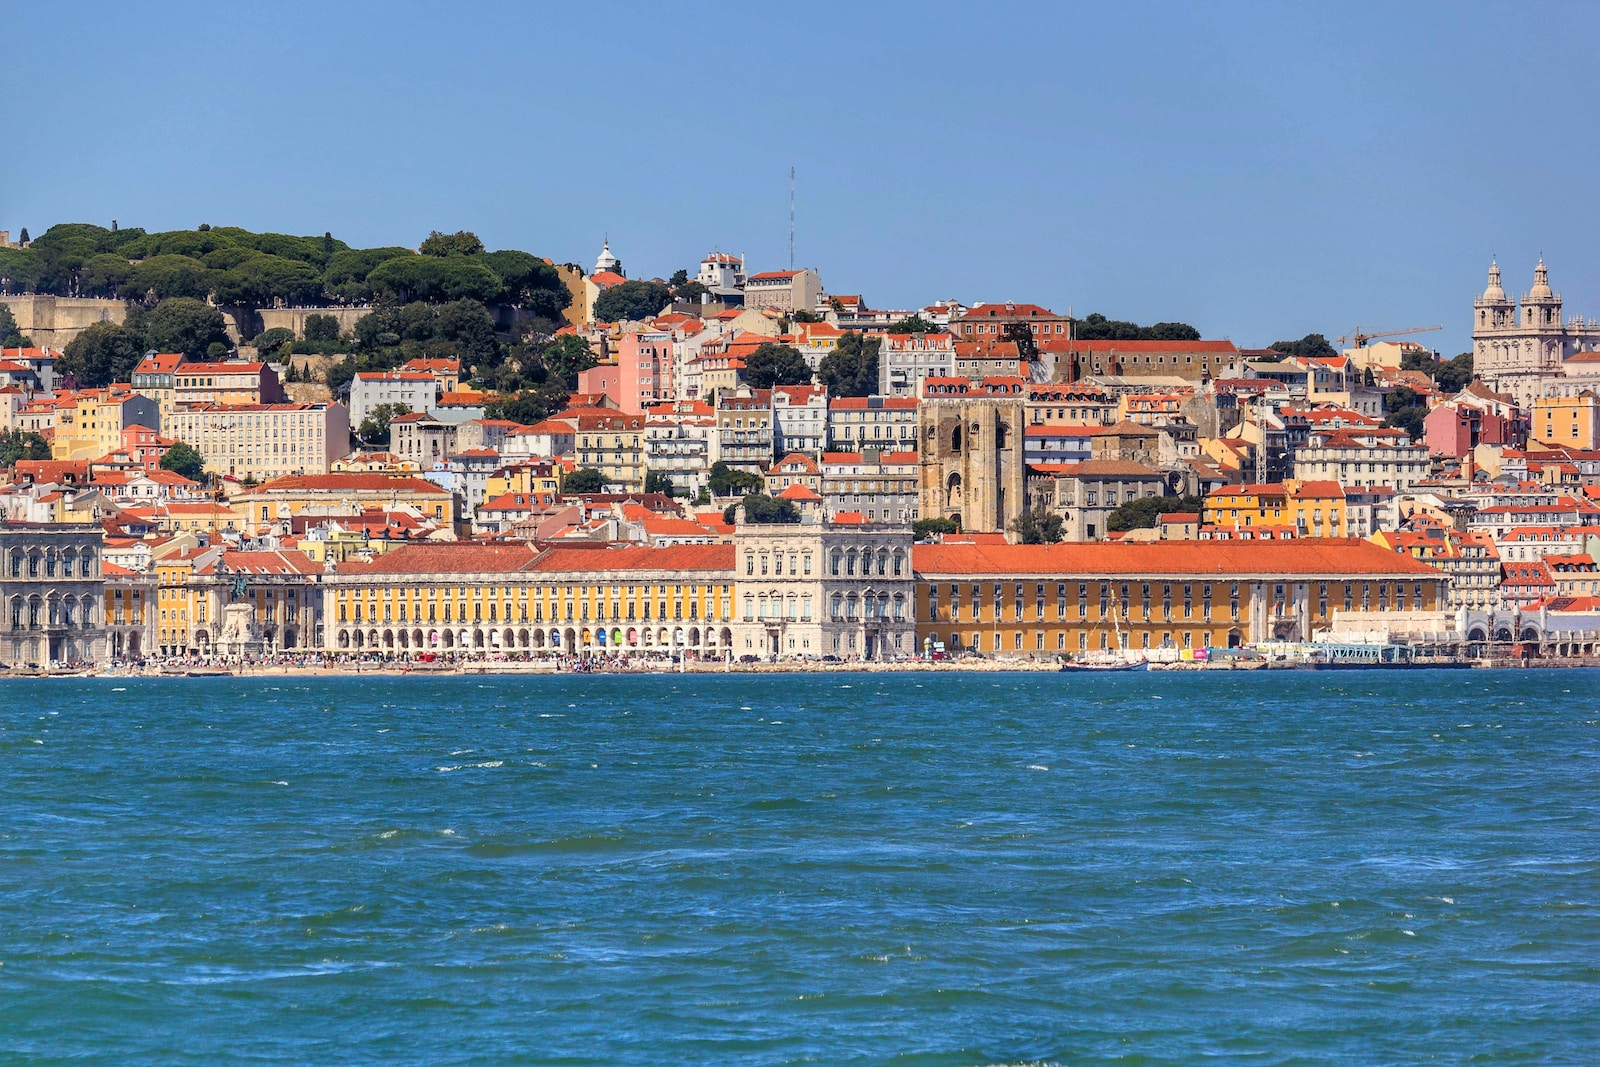 Lizbona wakacje, Lizbona wczasy, Lizbona hotele, Lizbona atrakcje, Lizbona zwiedzanie